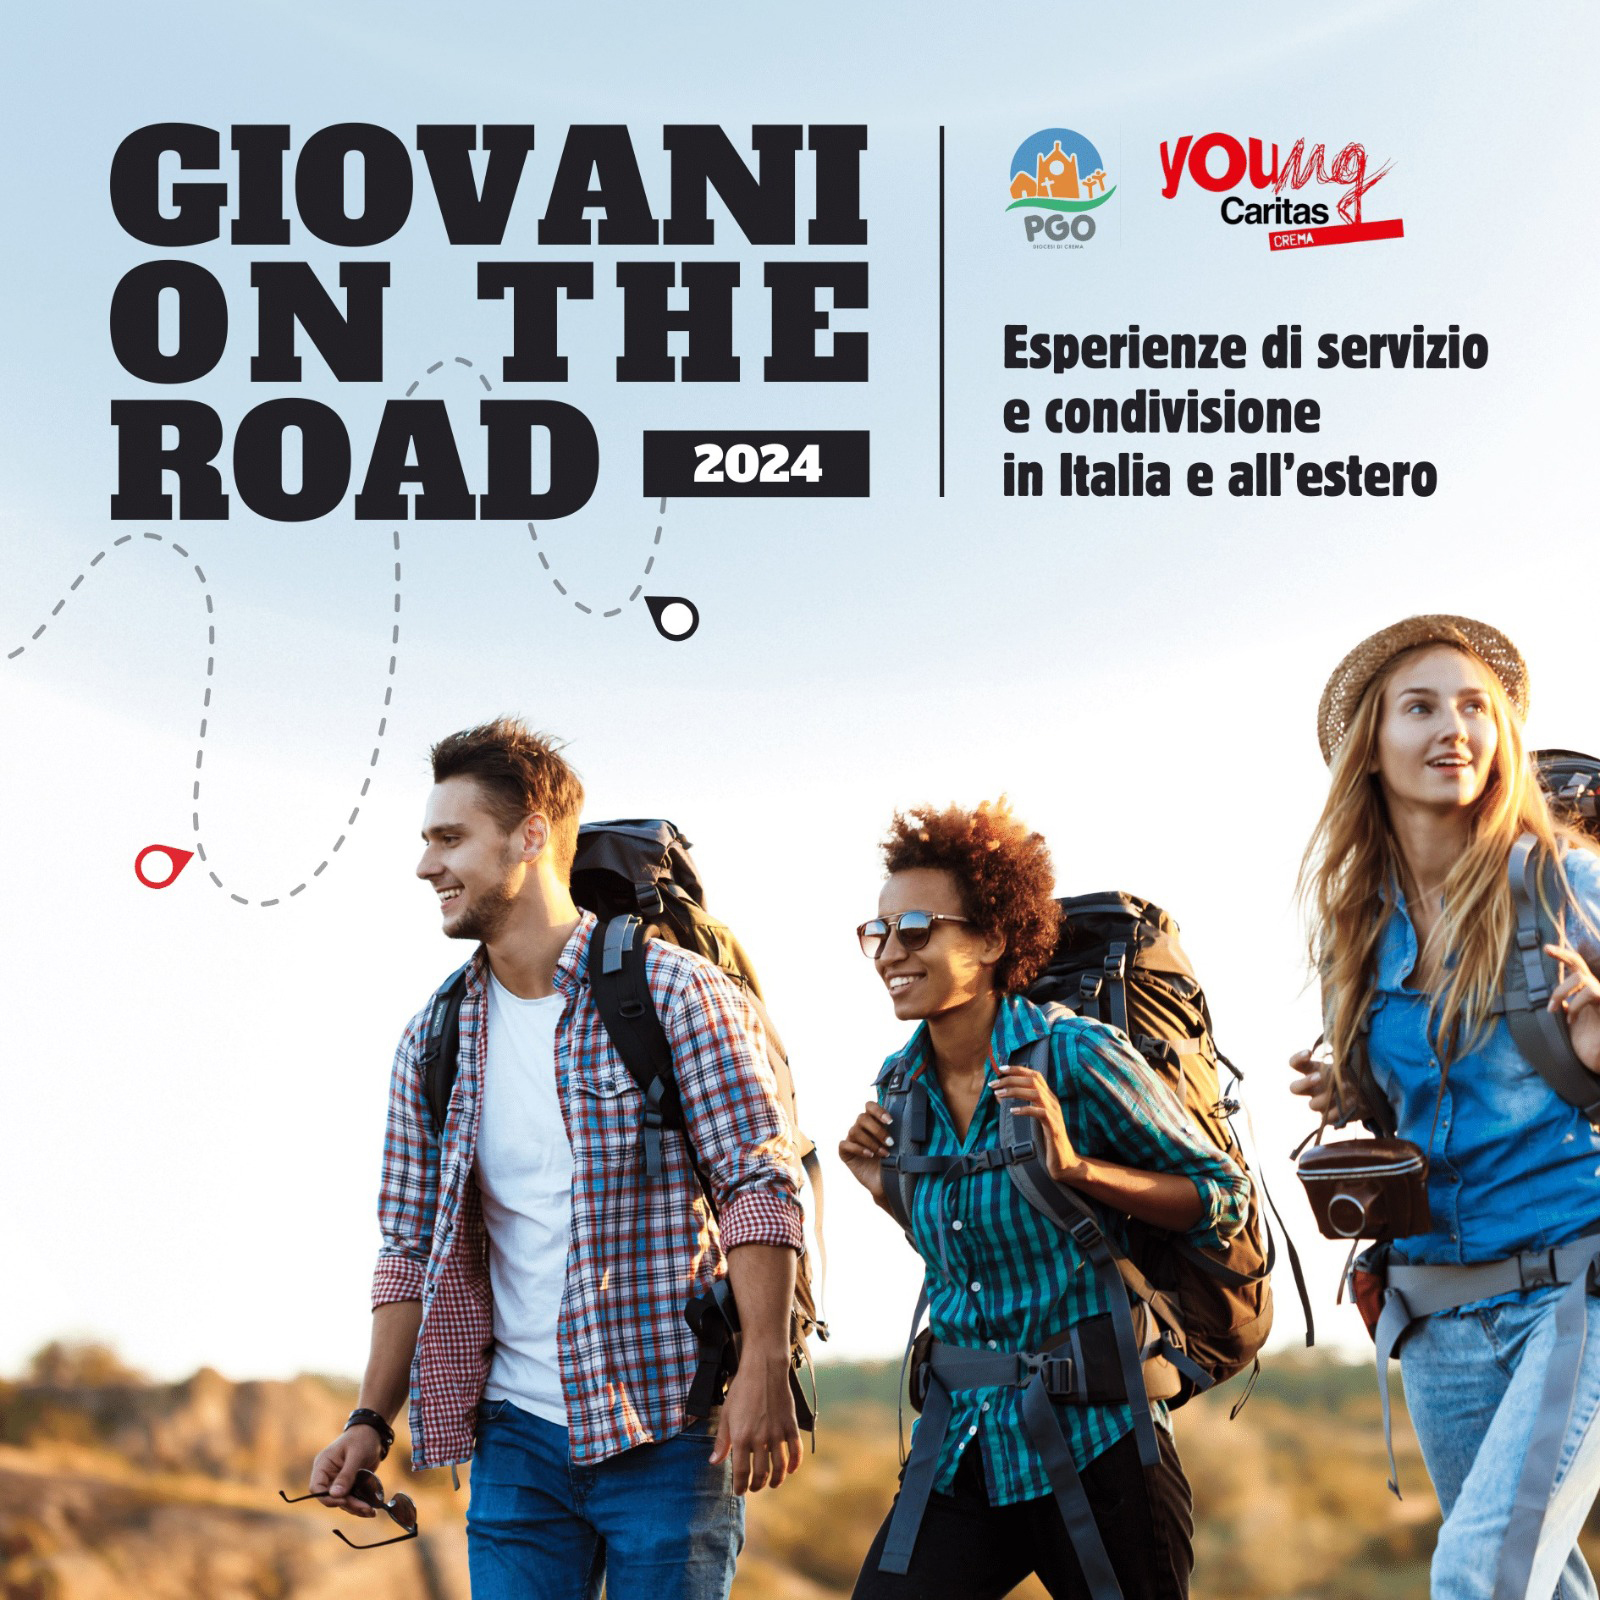 Progetto giovani on the road 2024, riproposti da Caritas e Pastorale giovanile della diocesi di Crema